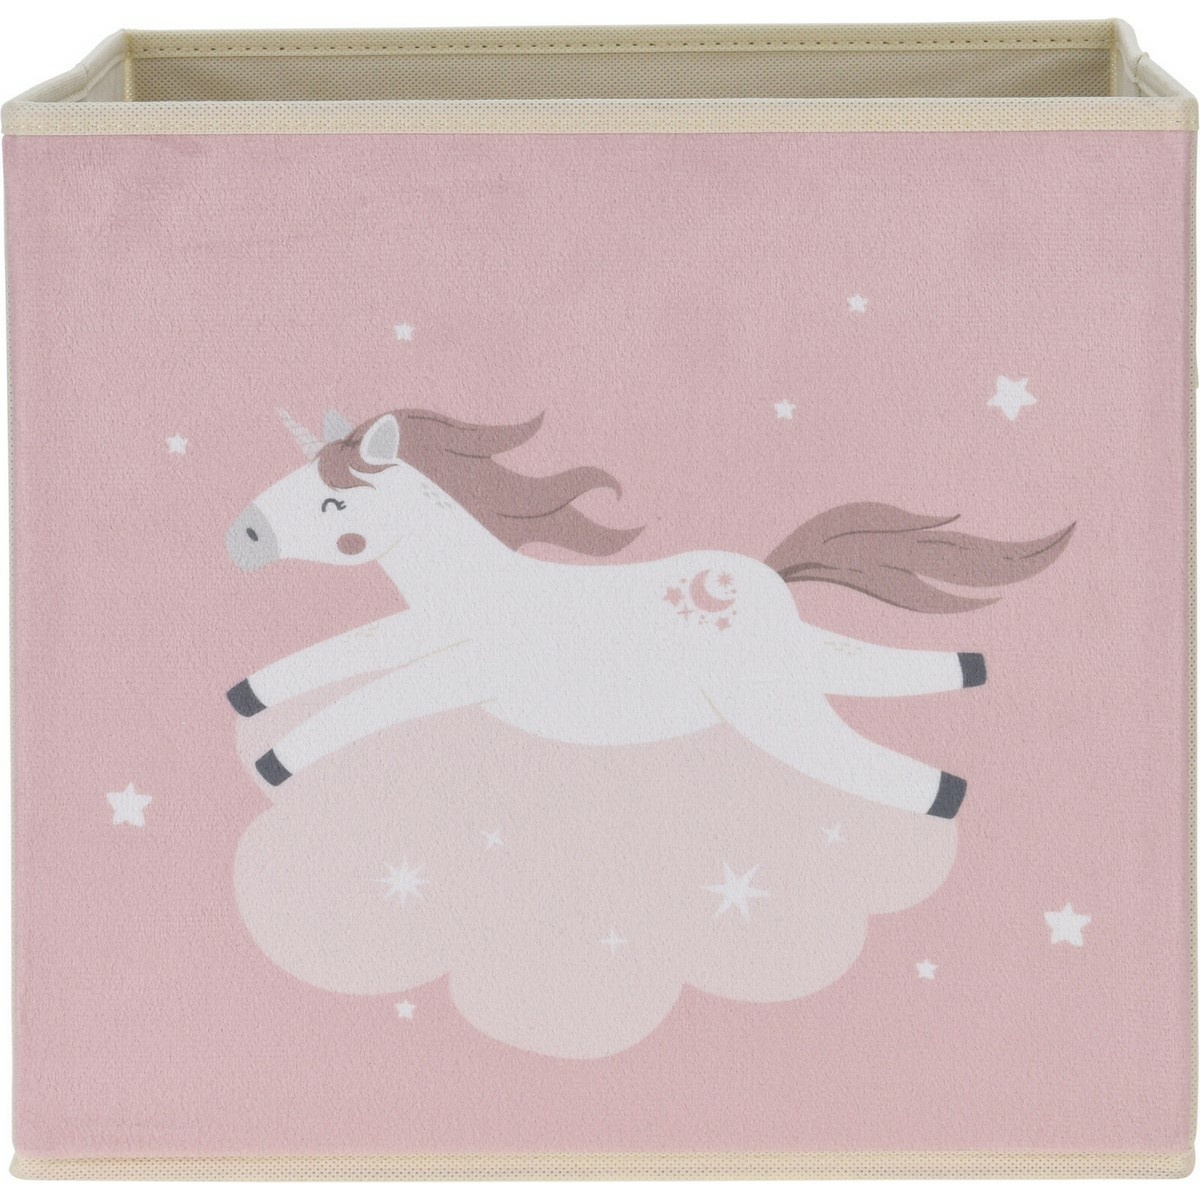 Fotografie Dětský textilní box Unicorn dream růžová, 32 x 32 x 30 cm